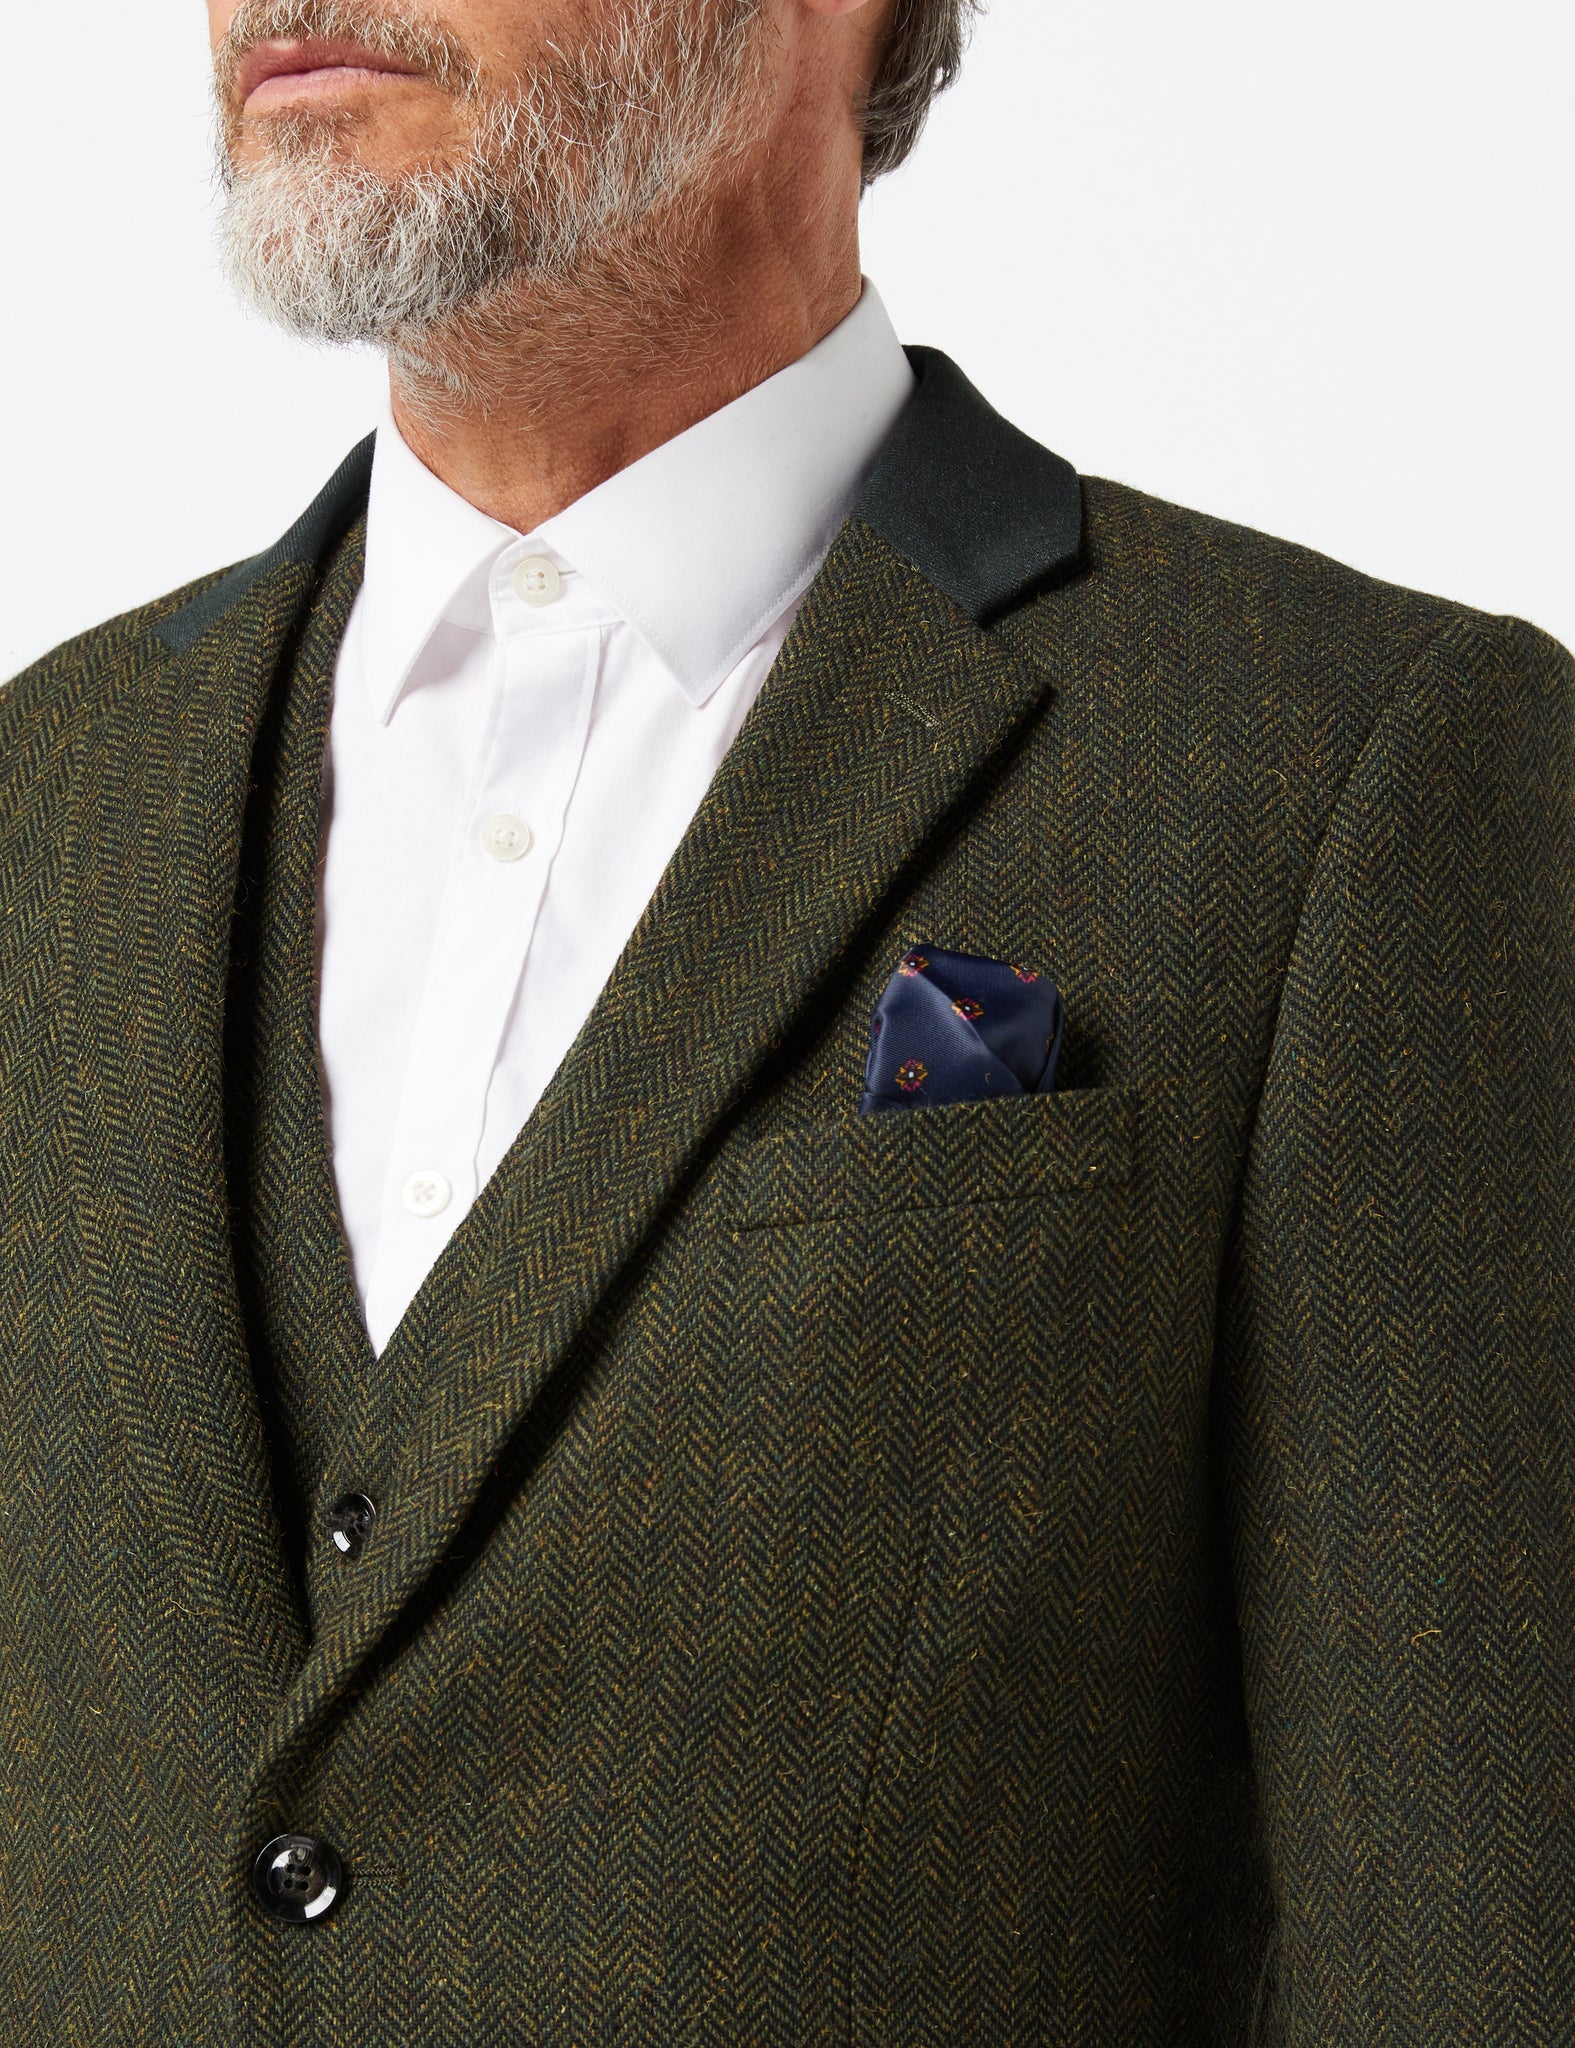 Herringbone Tweed Suit In Olive